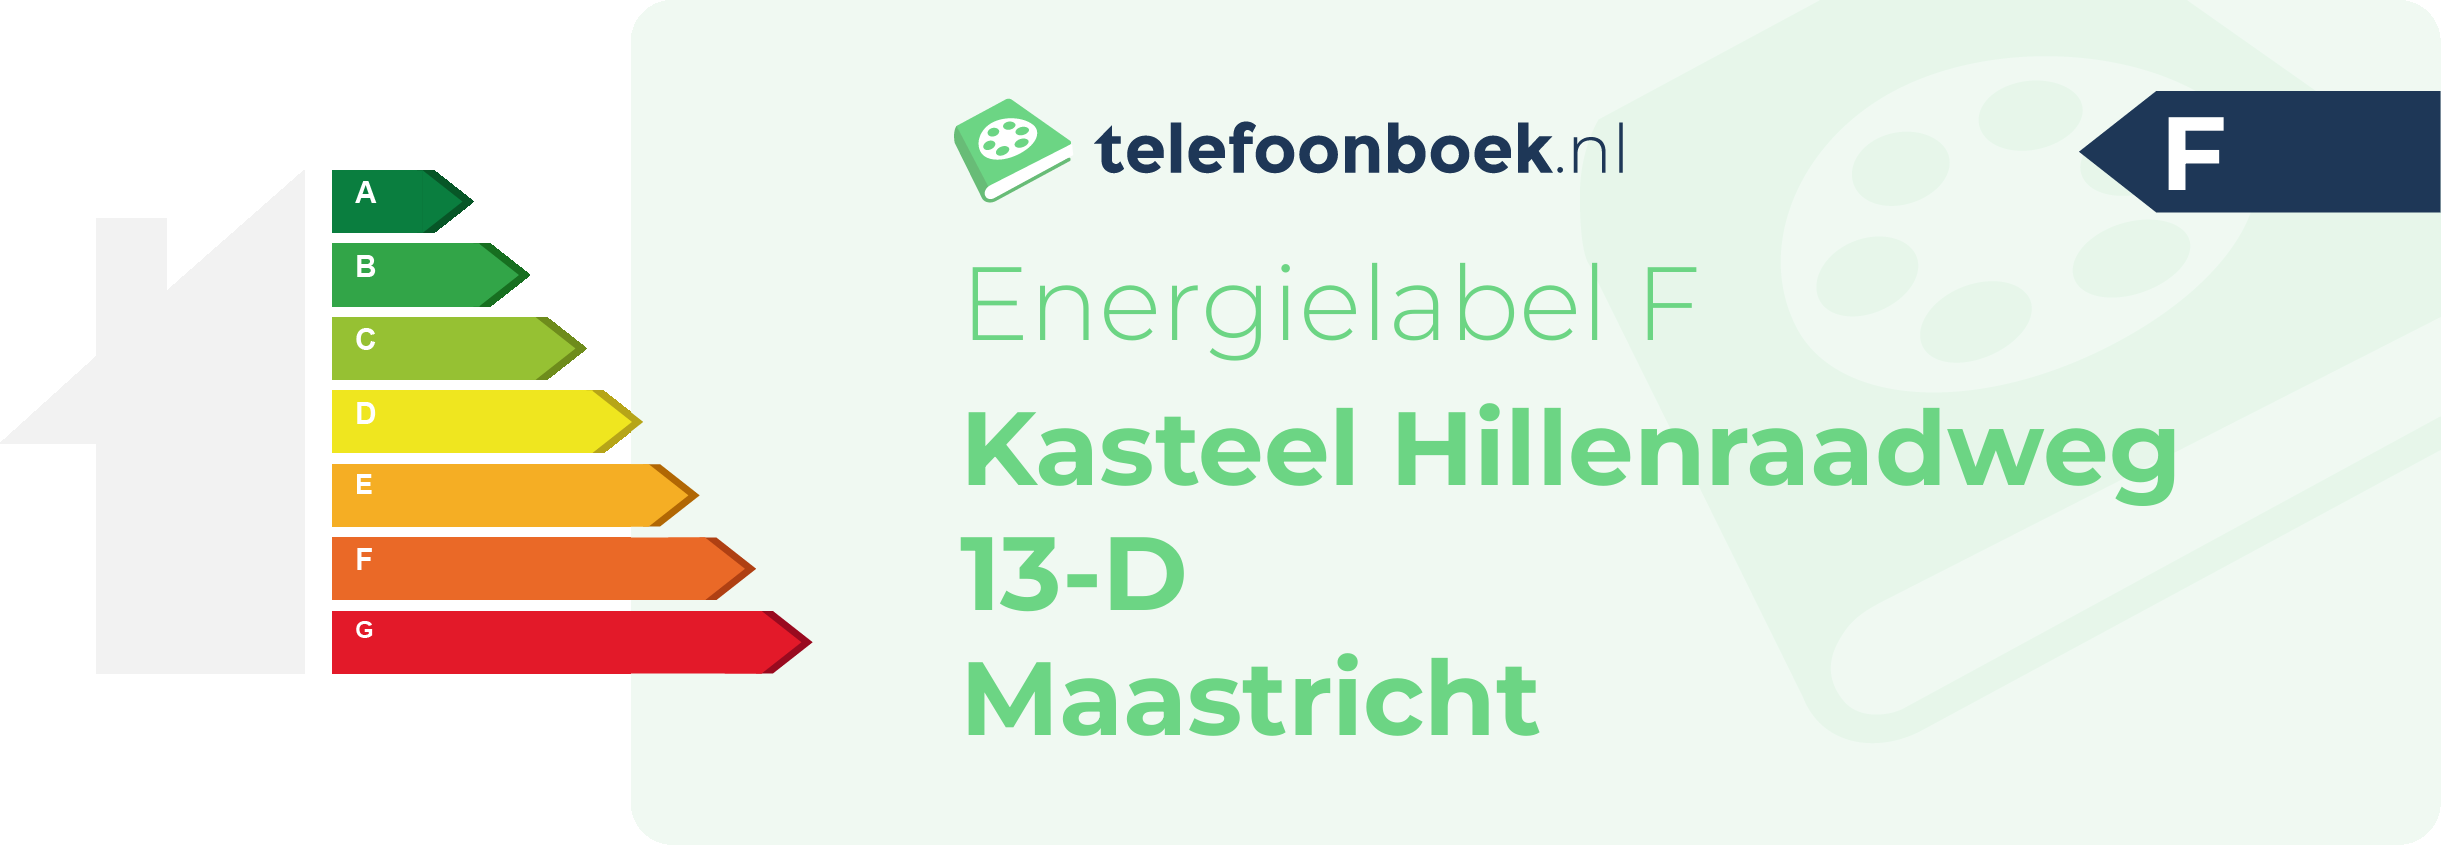 Energielabel Kasteel Hillenraadweg 13-D Maastricht